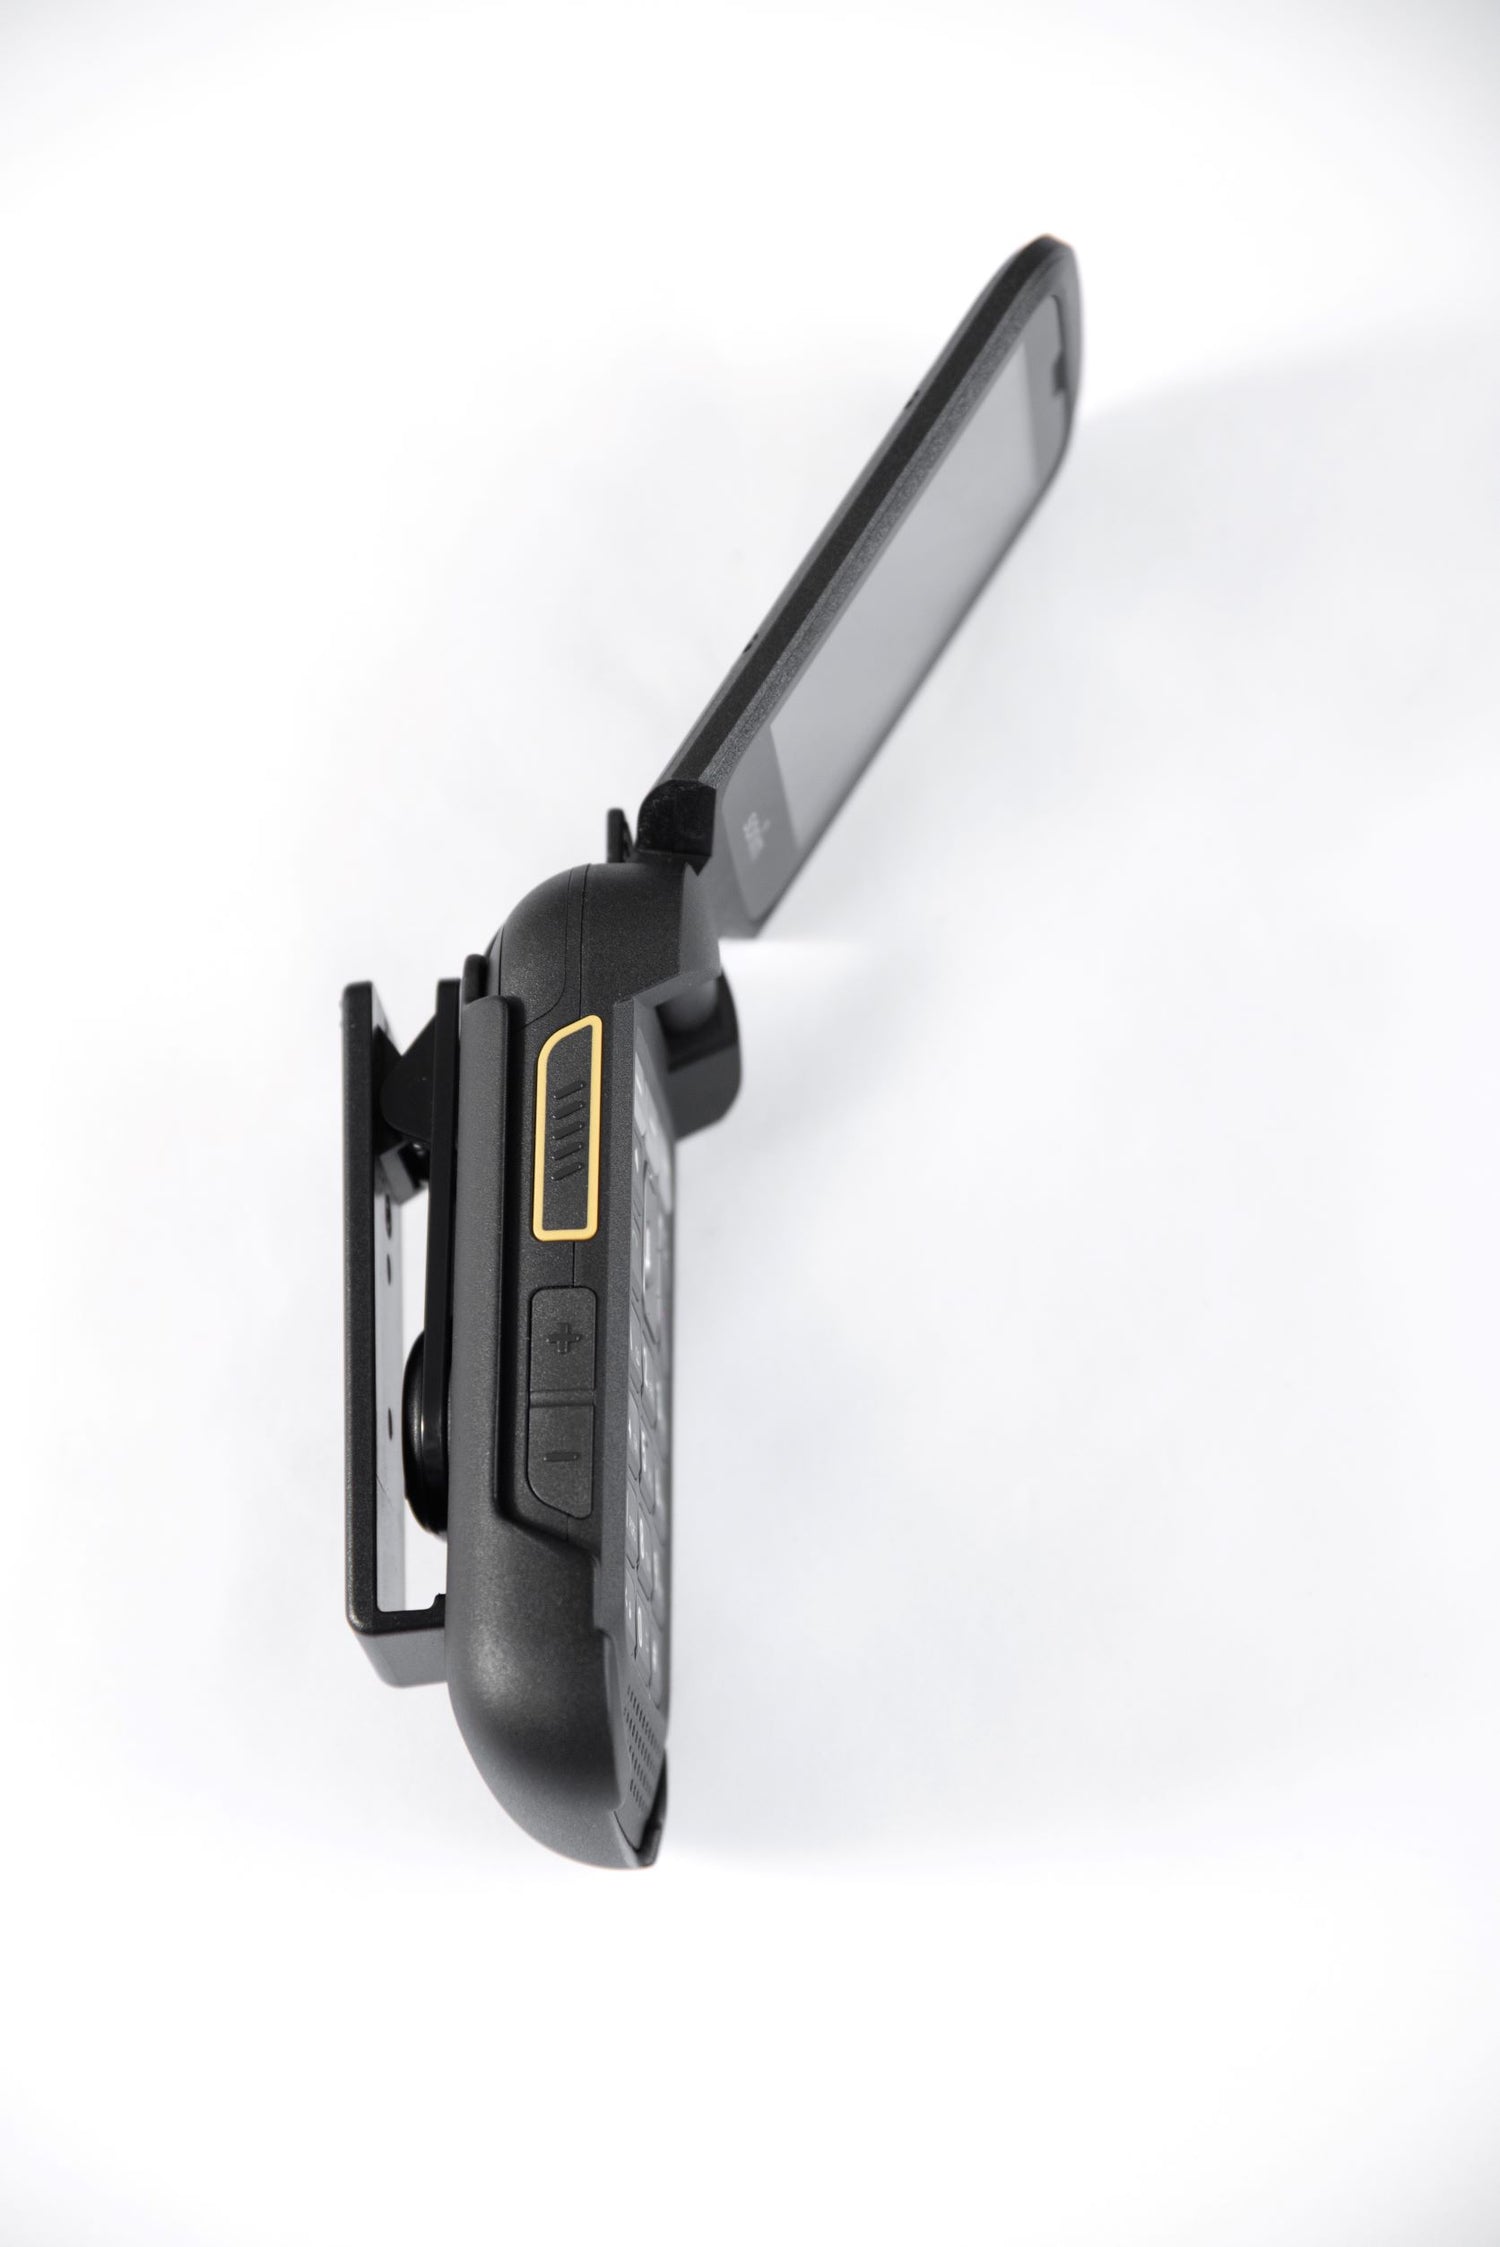 Sonim's non-incendive C1D2 holster for XP3plus handset. 